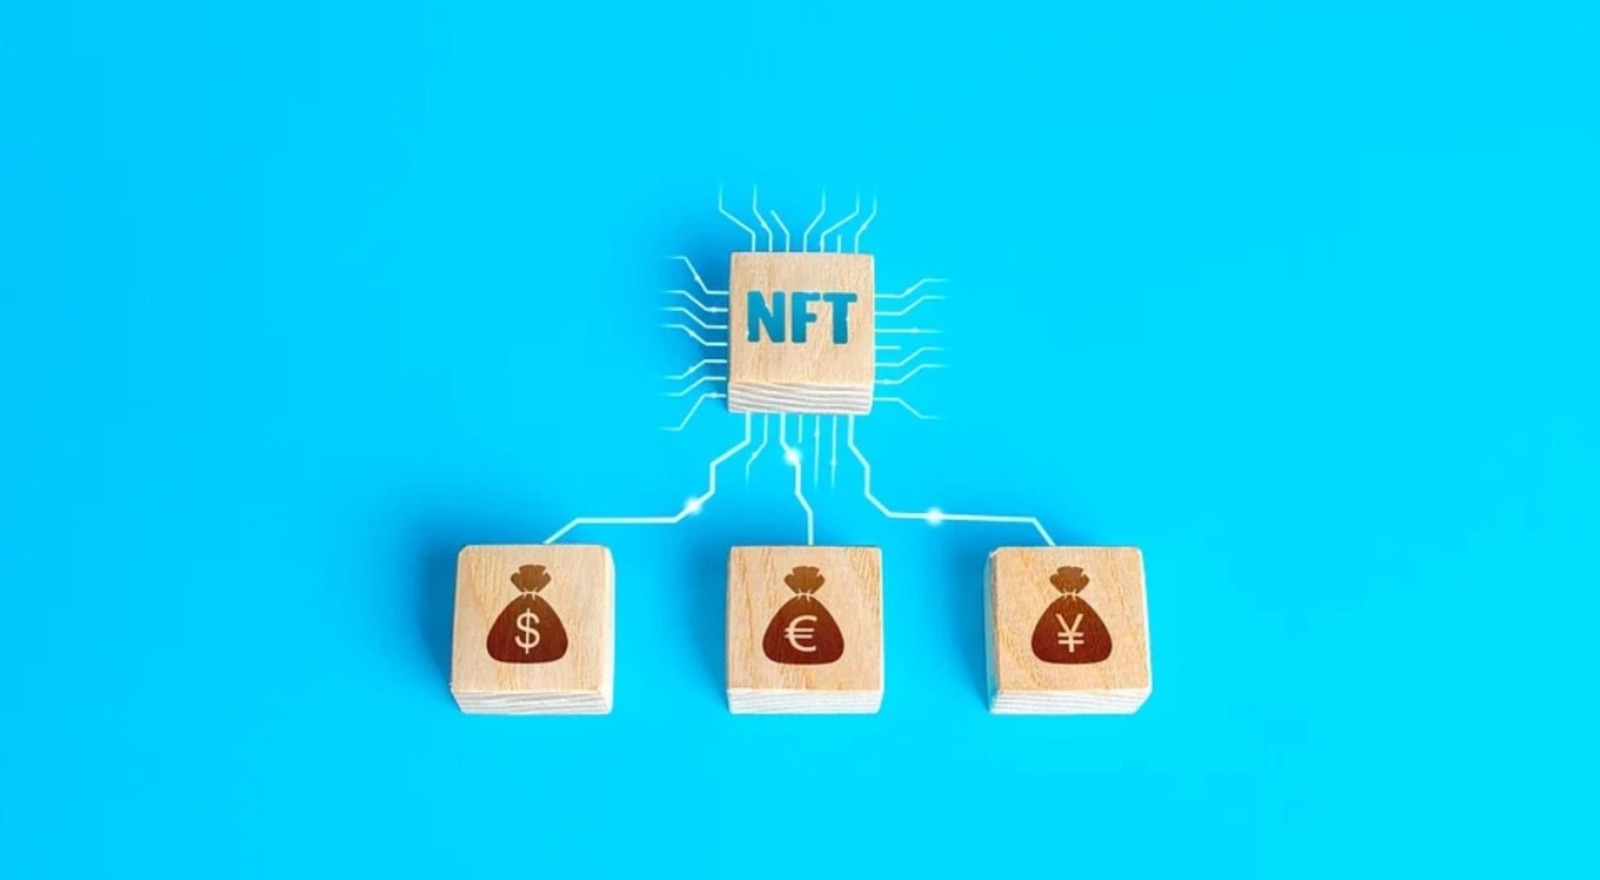 En une année, les NFT ont représenté 100 millions de dollars de fraude